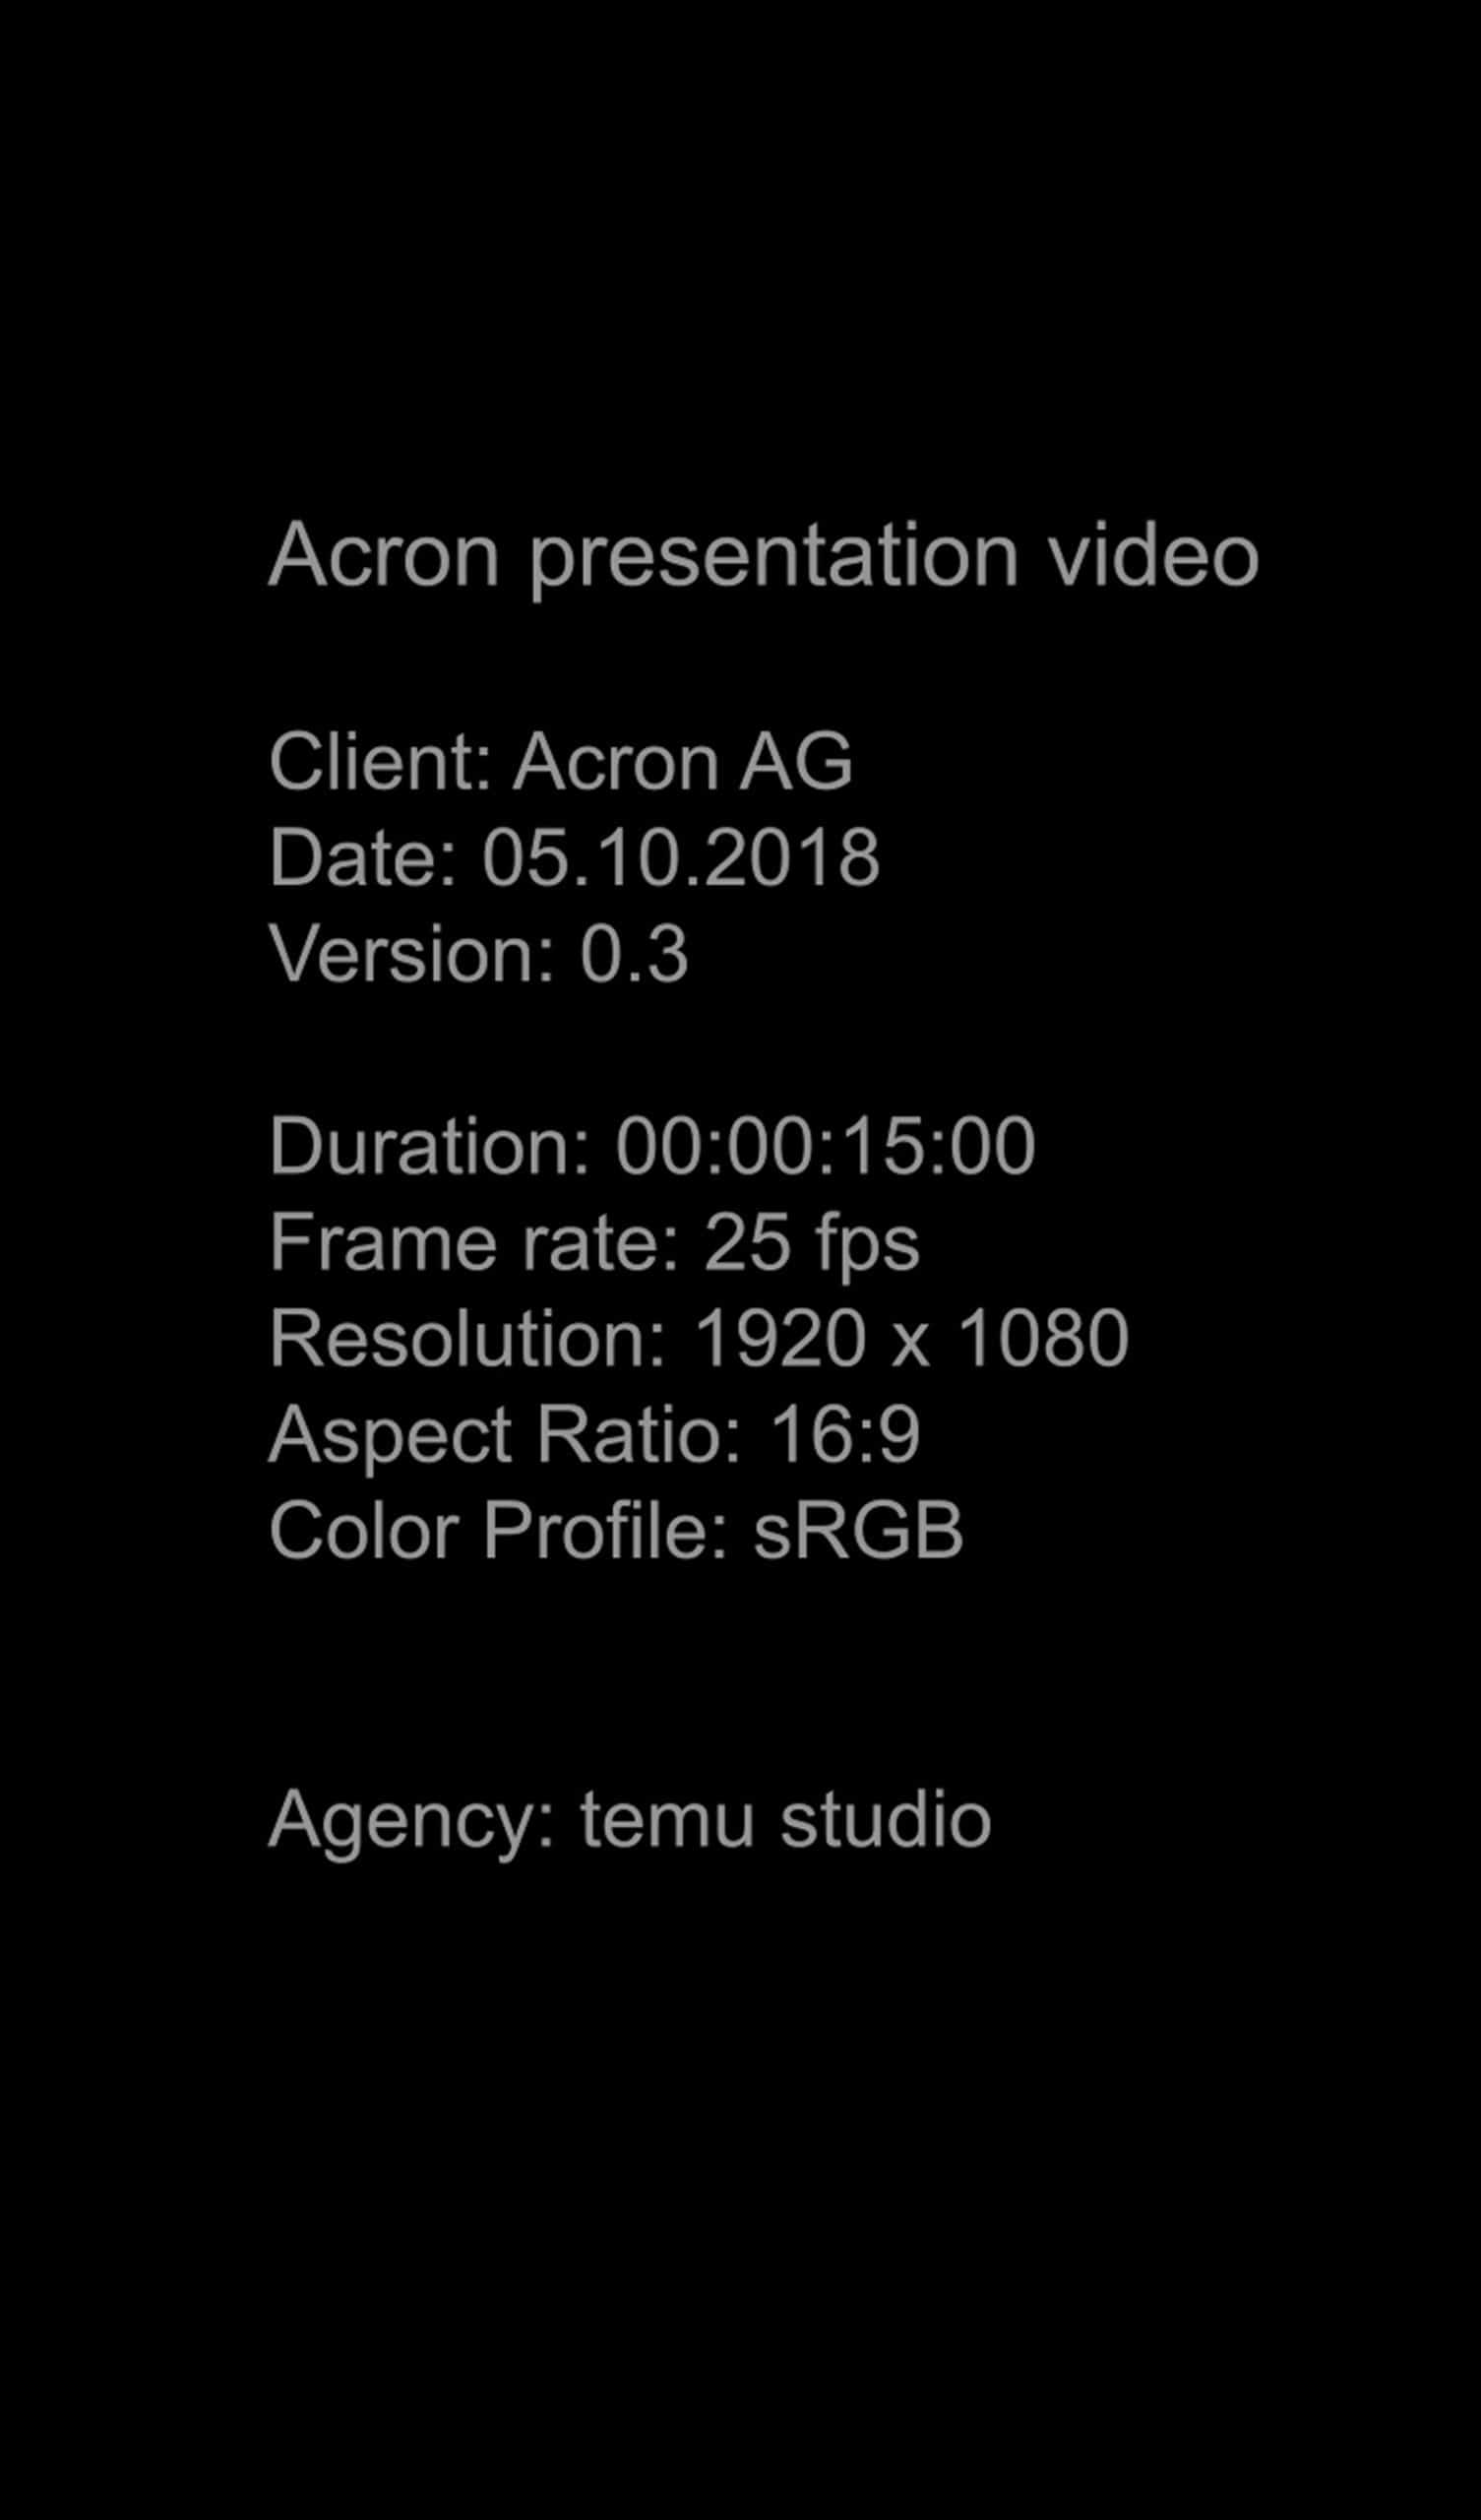 acron video details02